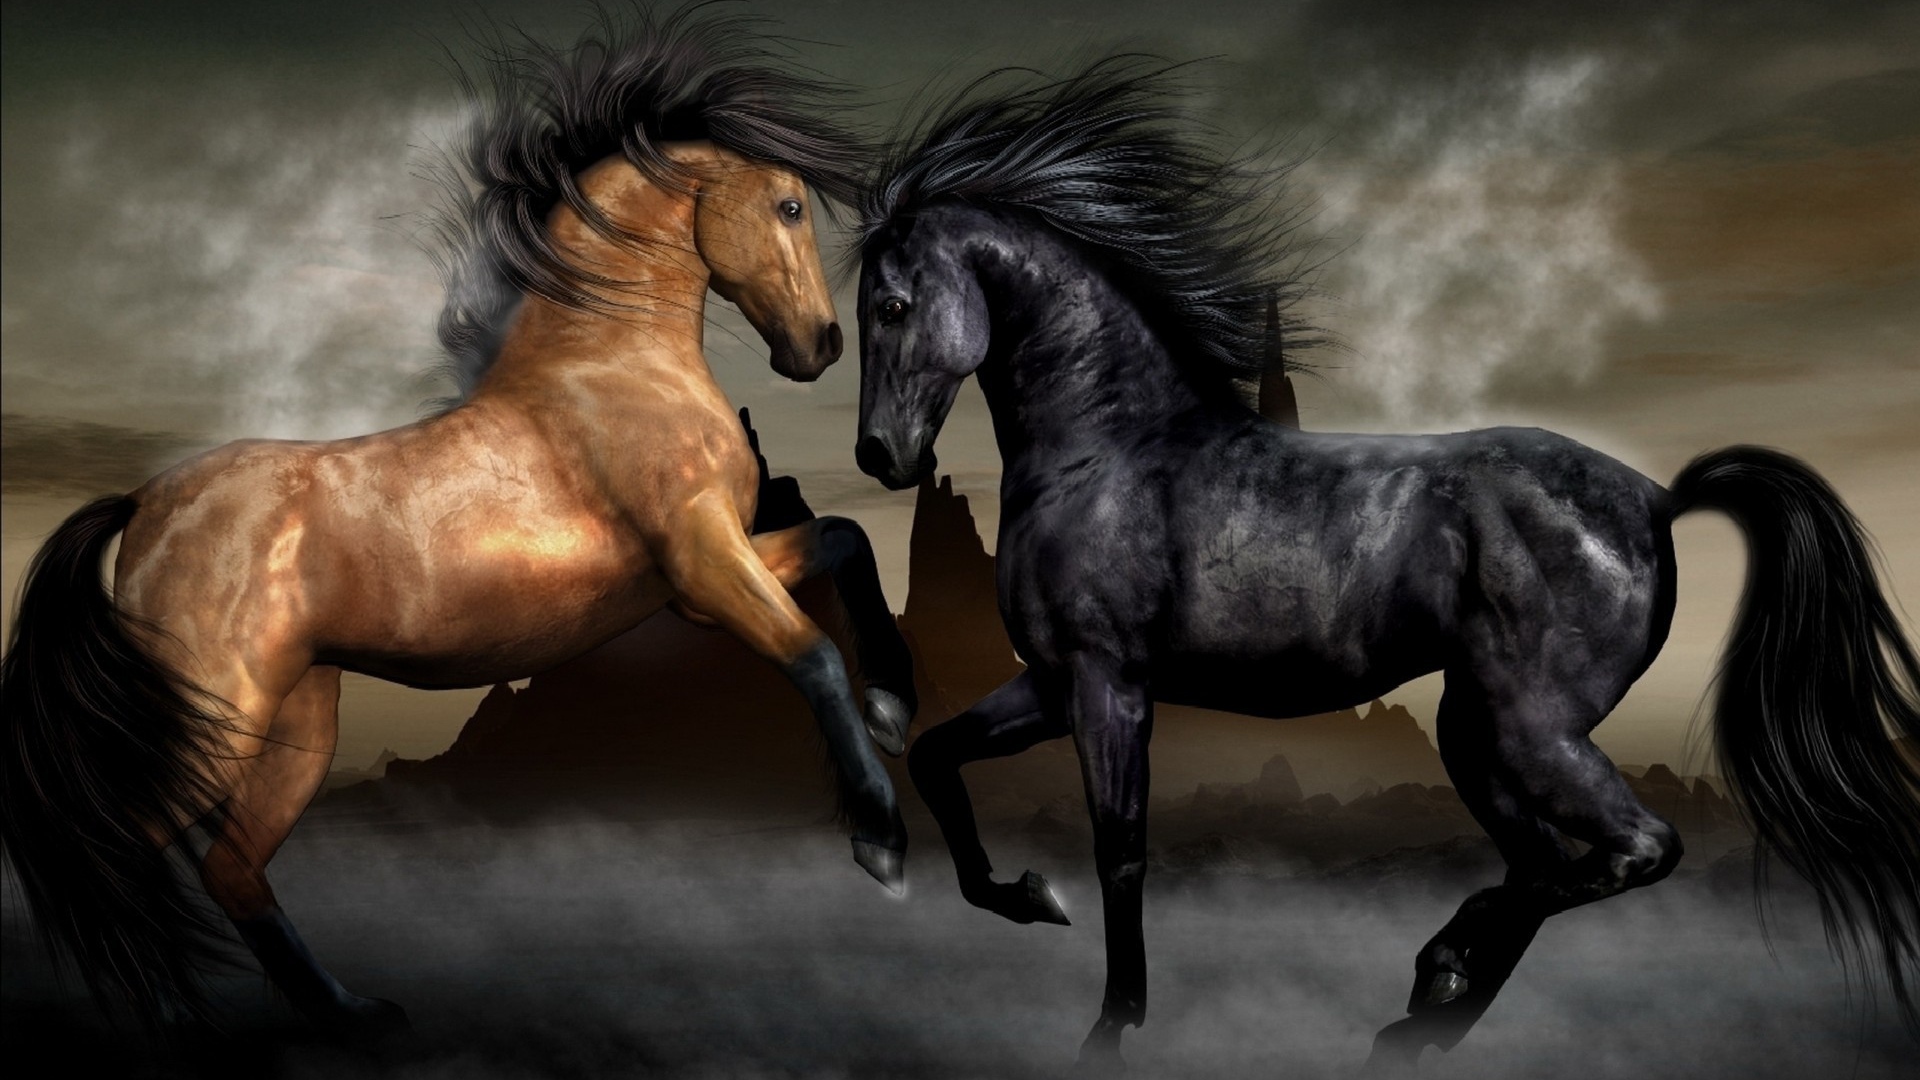 Две лошади черная и коричневая